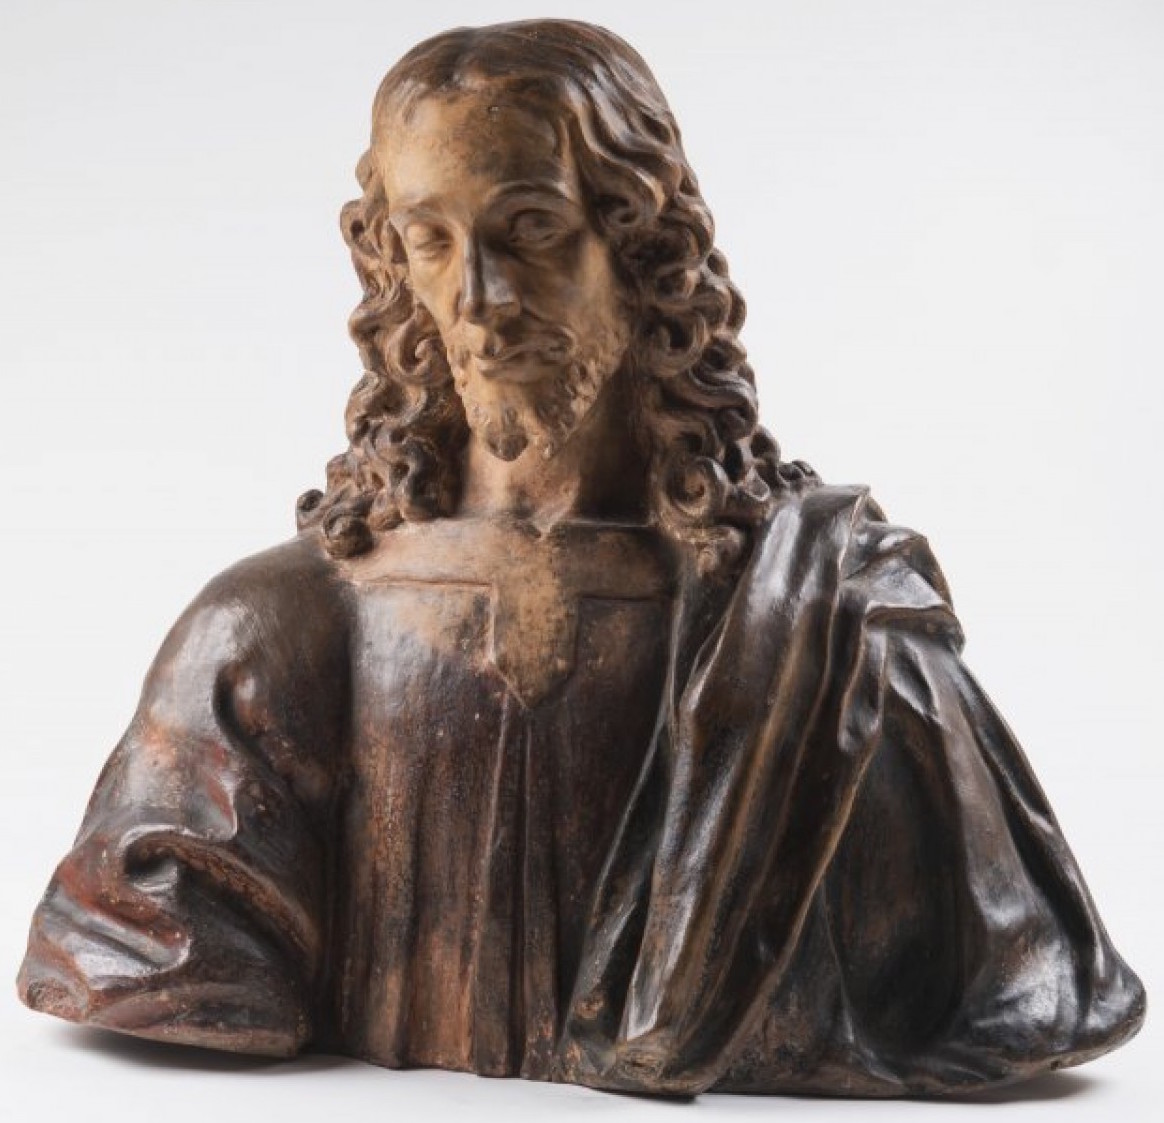 Poprsí Krista, Itálie, konec 15. století polychromovaná a patinovaná terakota výška 63 cm  vyvolávací cena: 480 000 Kč (+ 24% provize)